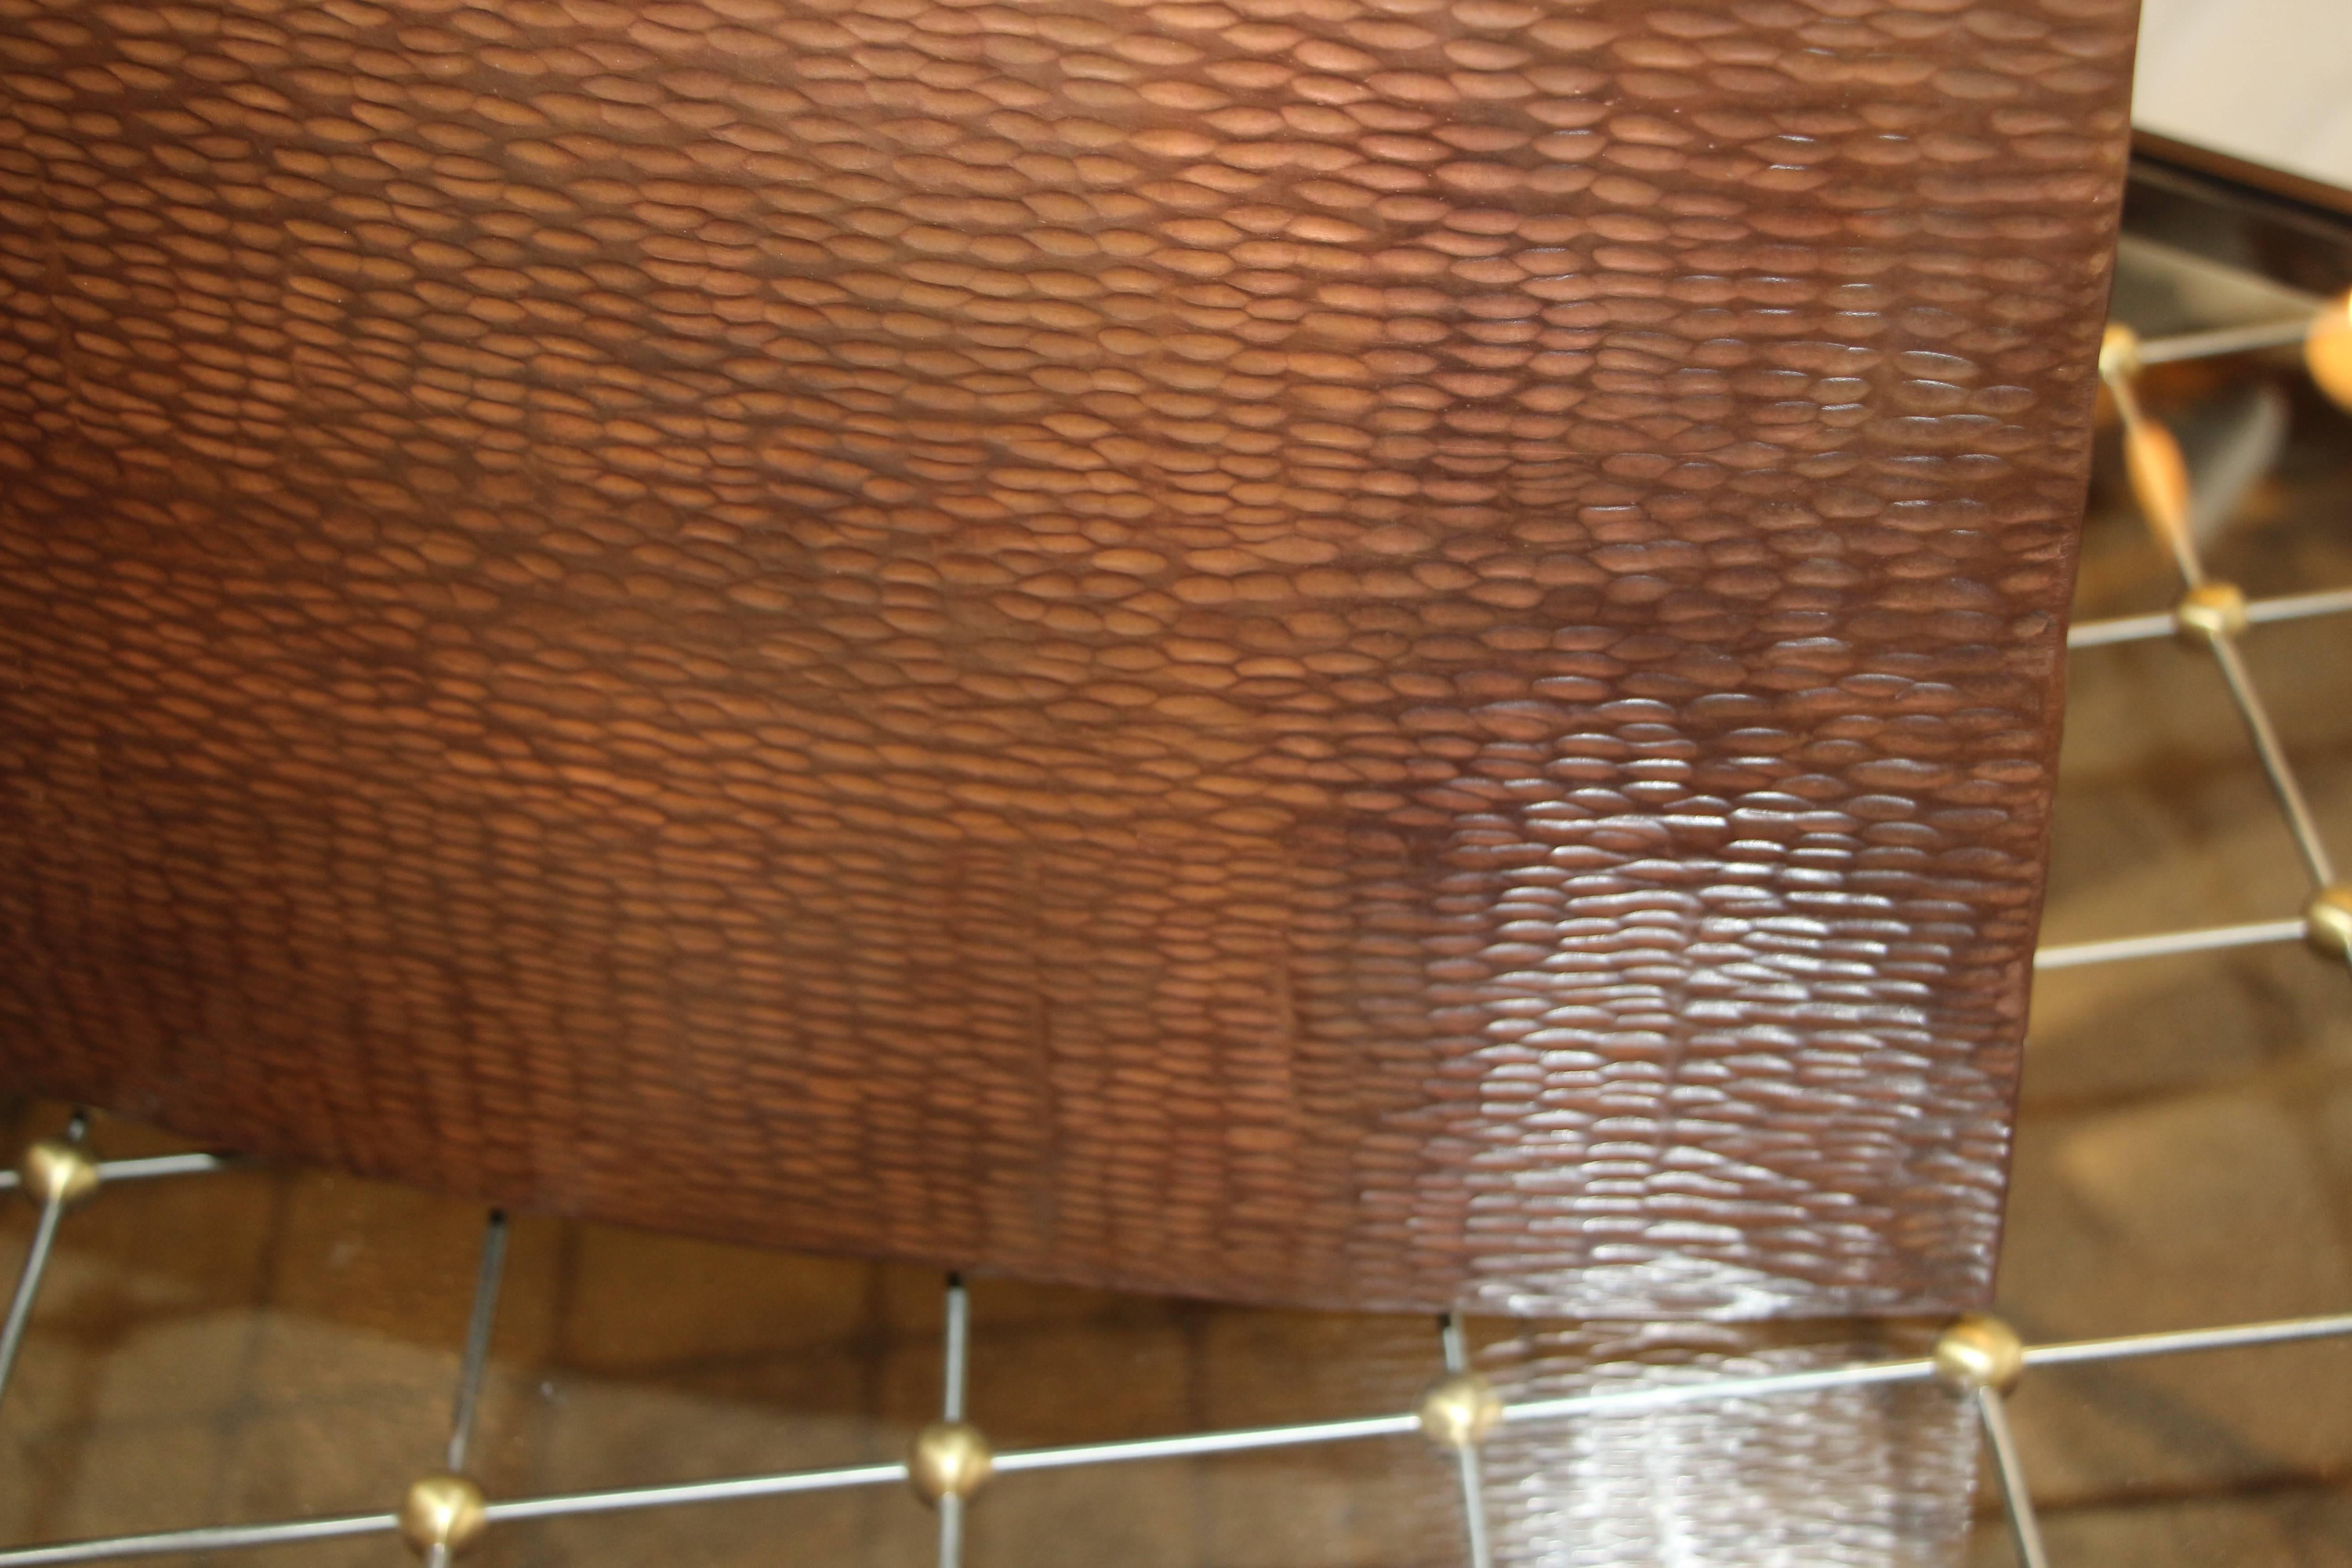 Américain Vase saule martelé en cuivre de Robert Kuo vendu par Steve Chase en vente